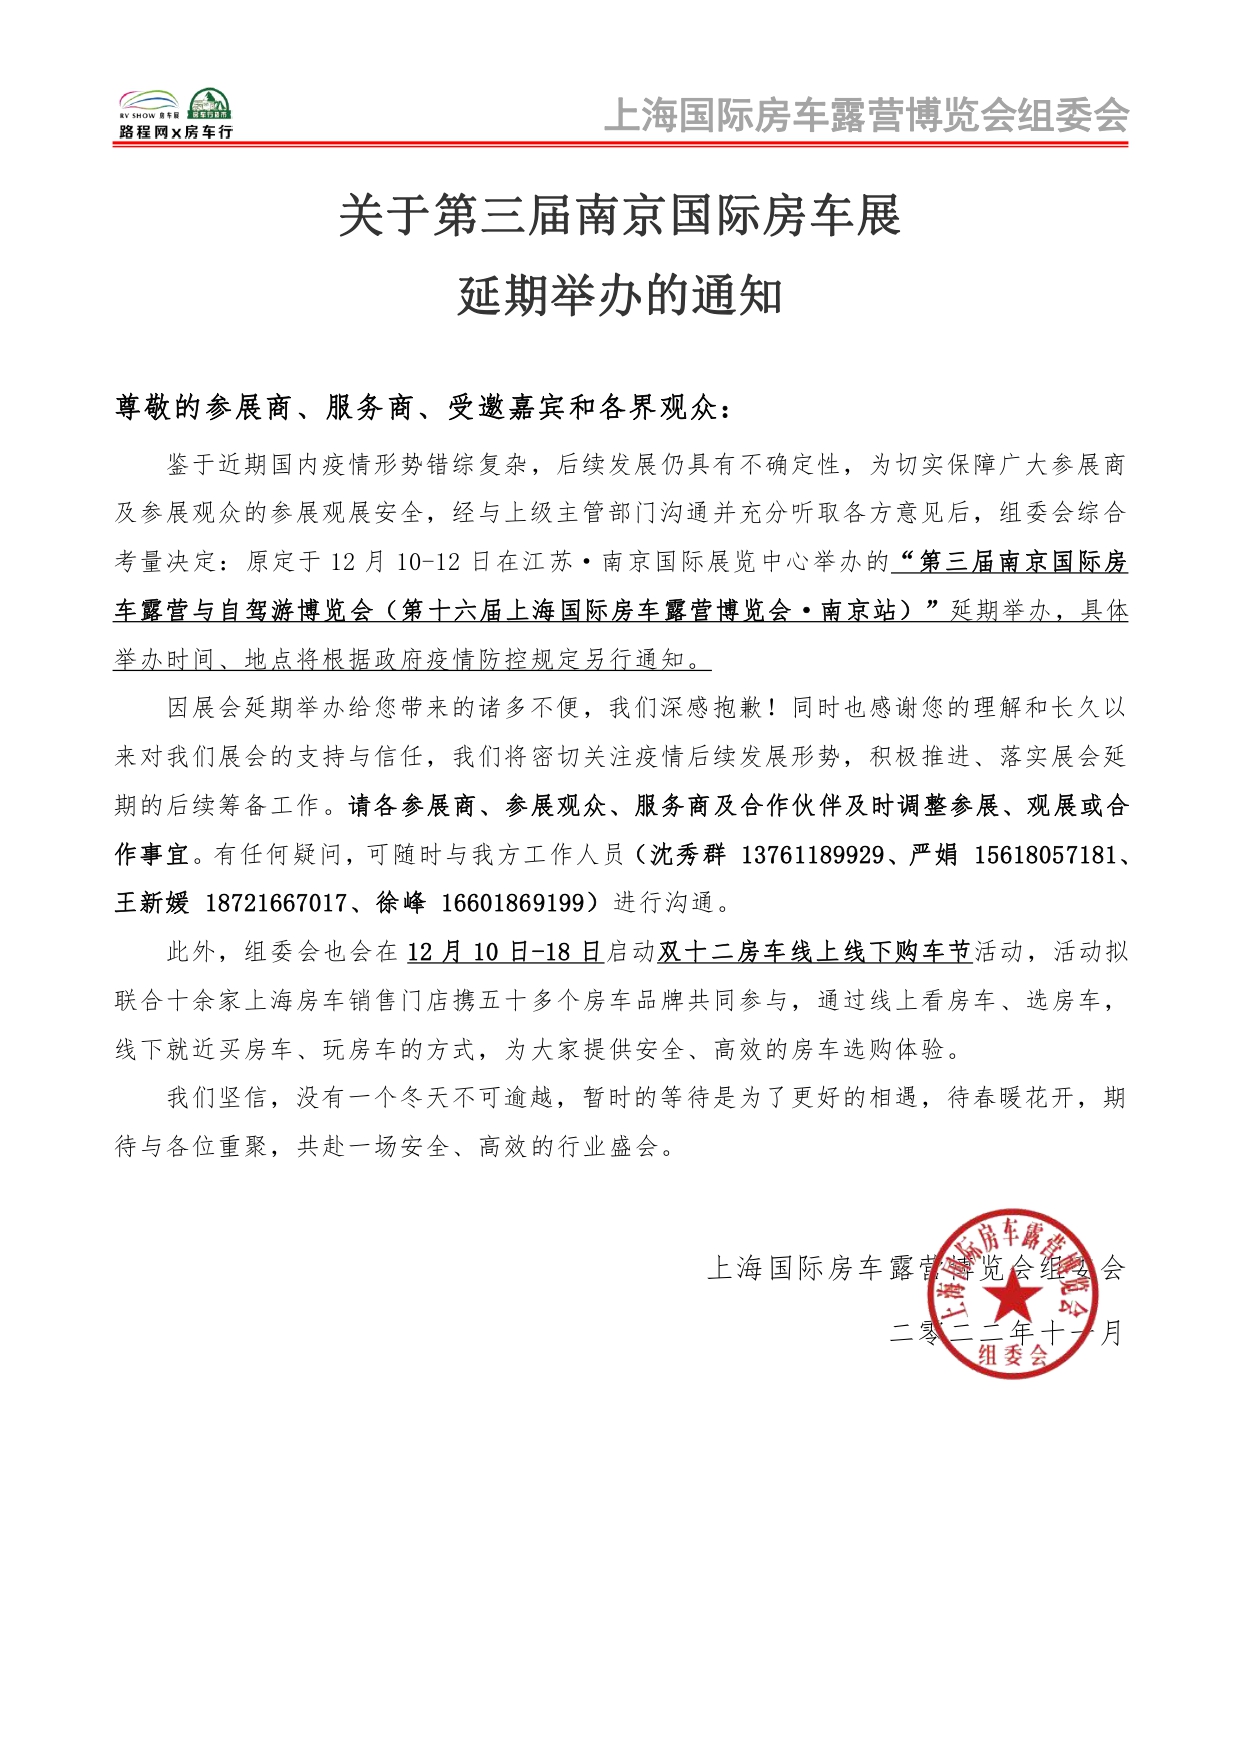 关于第三届南京国际房车展延期举办的通知_page-0001.jpg